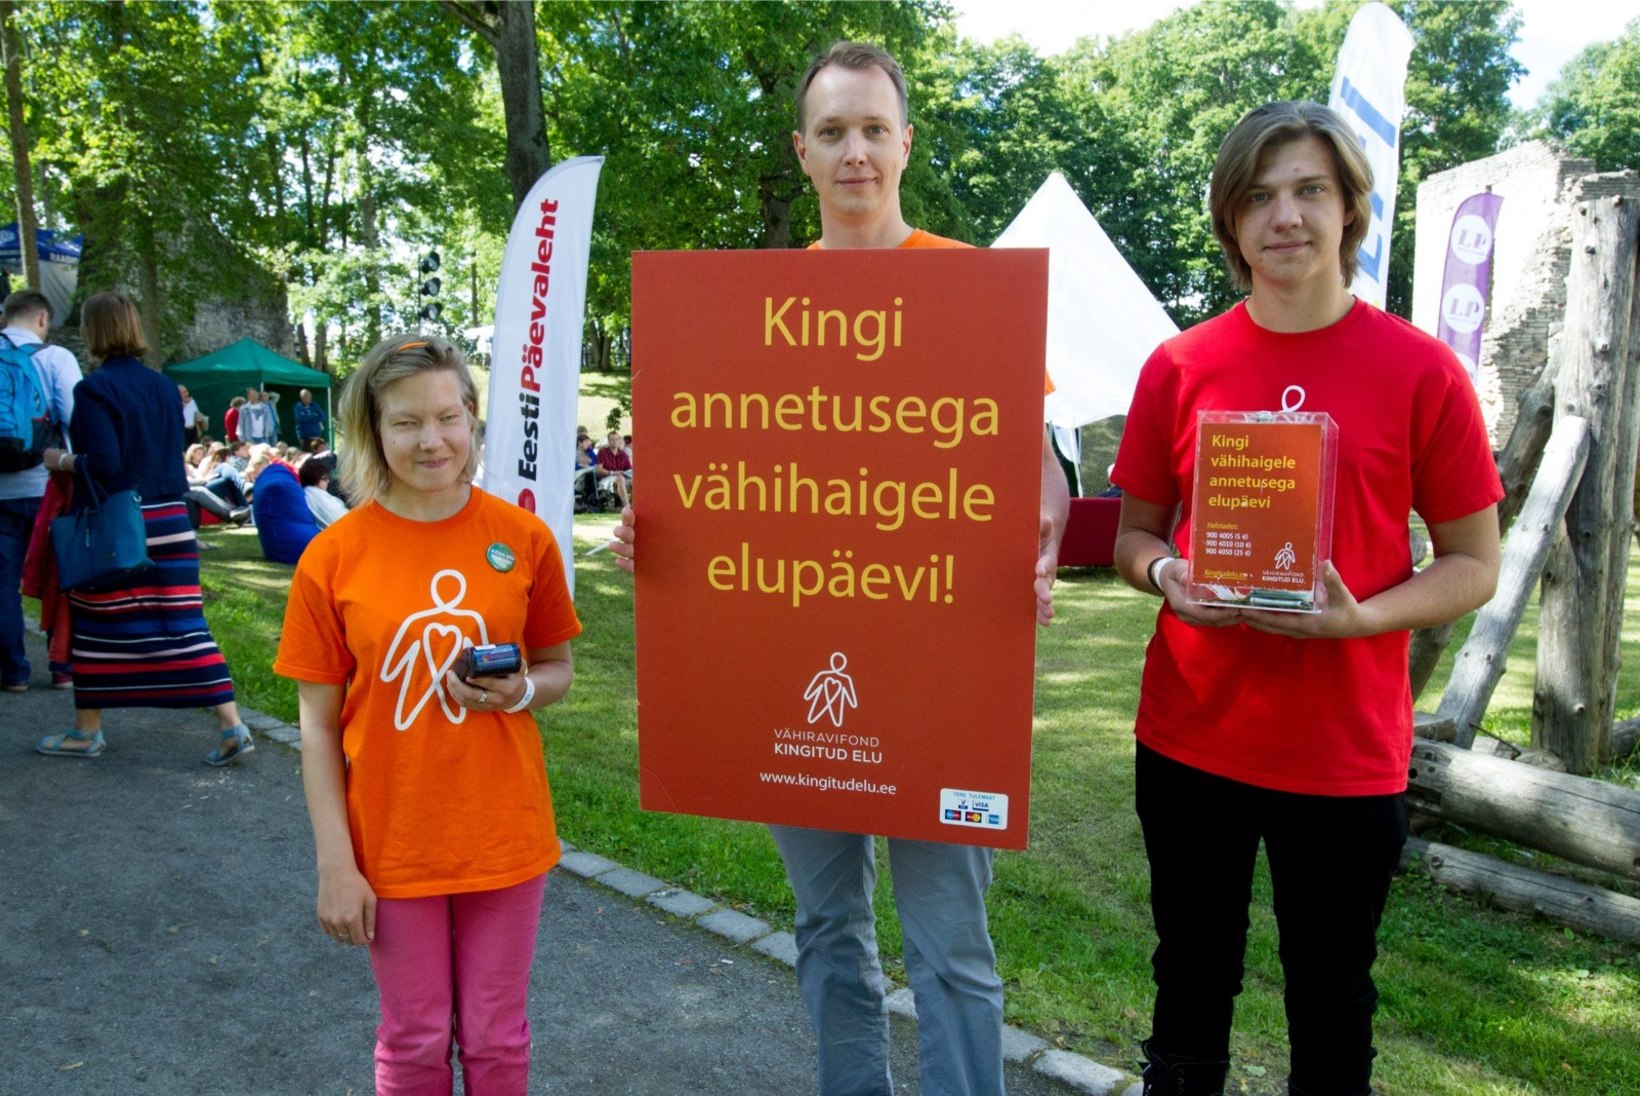 Augusti menuüritustel osalejad annetasid vähihaigete heaks ligi 5000 eurot